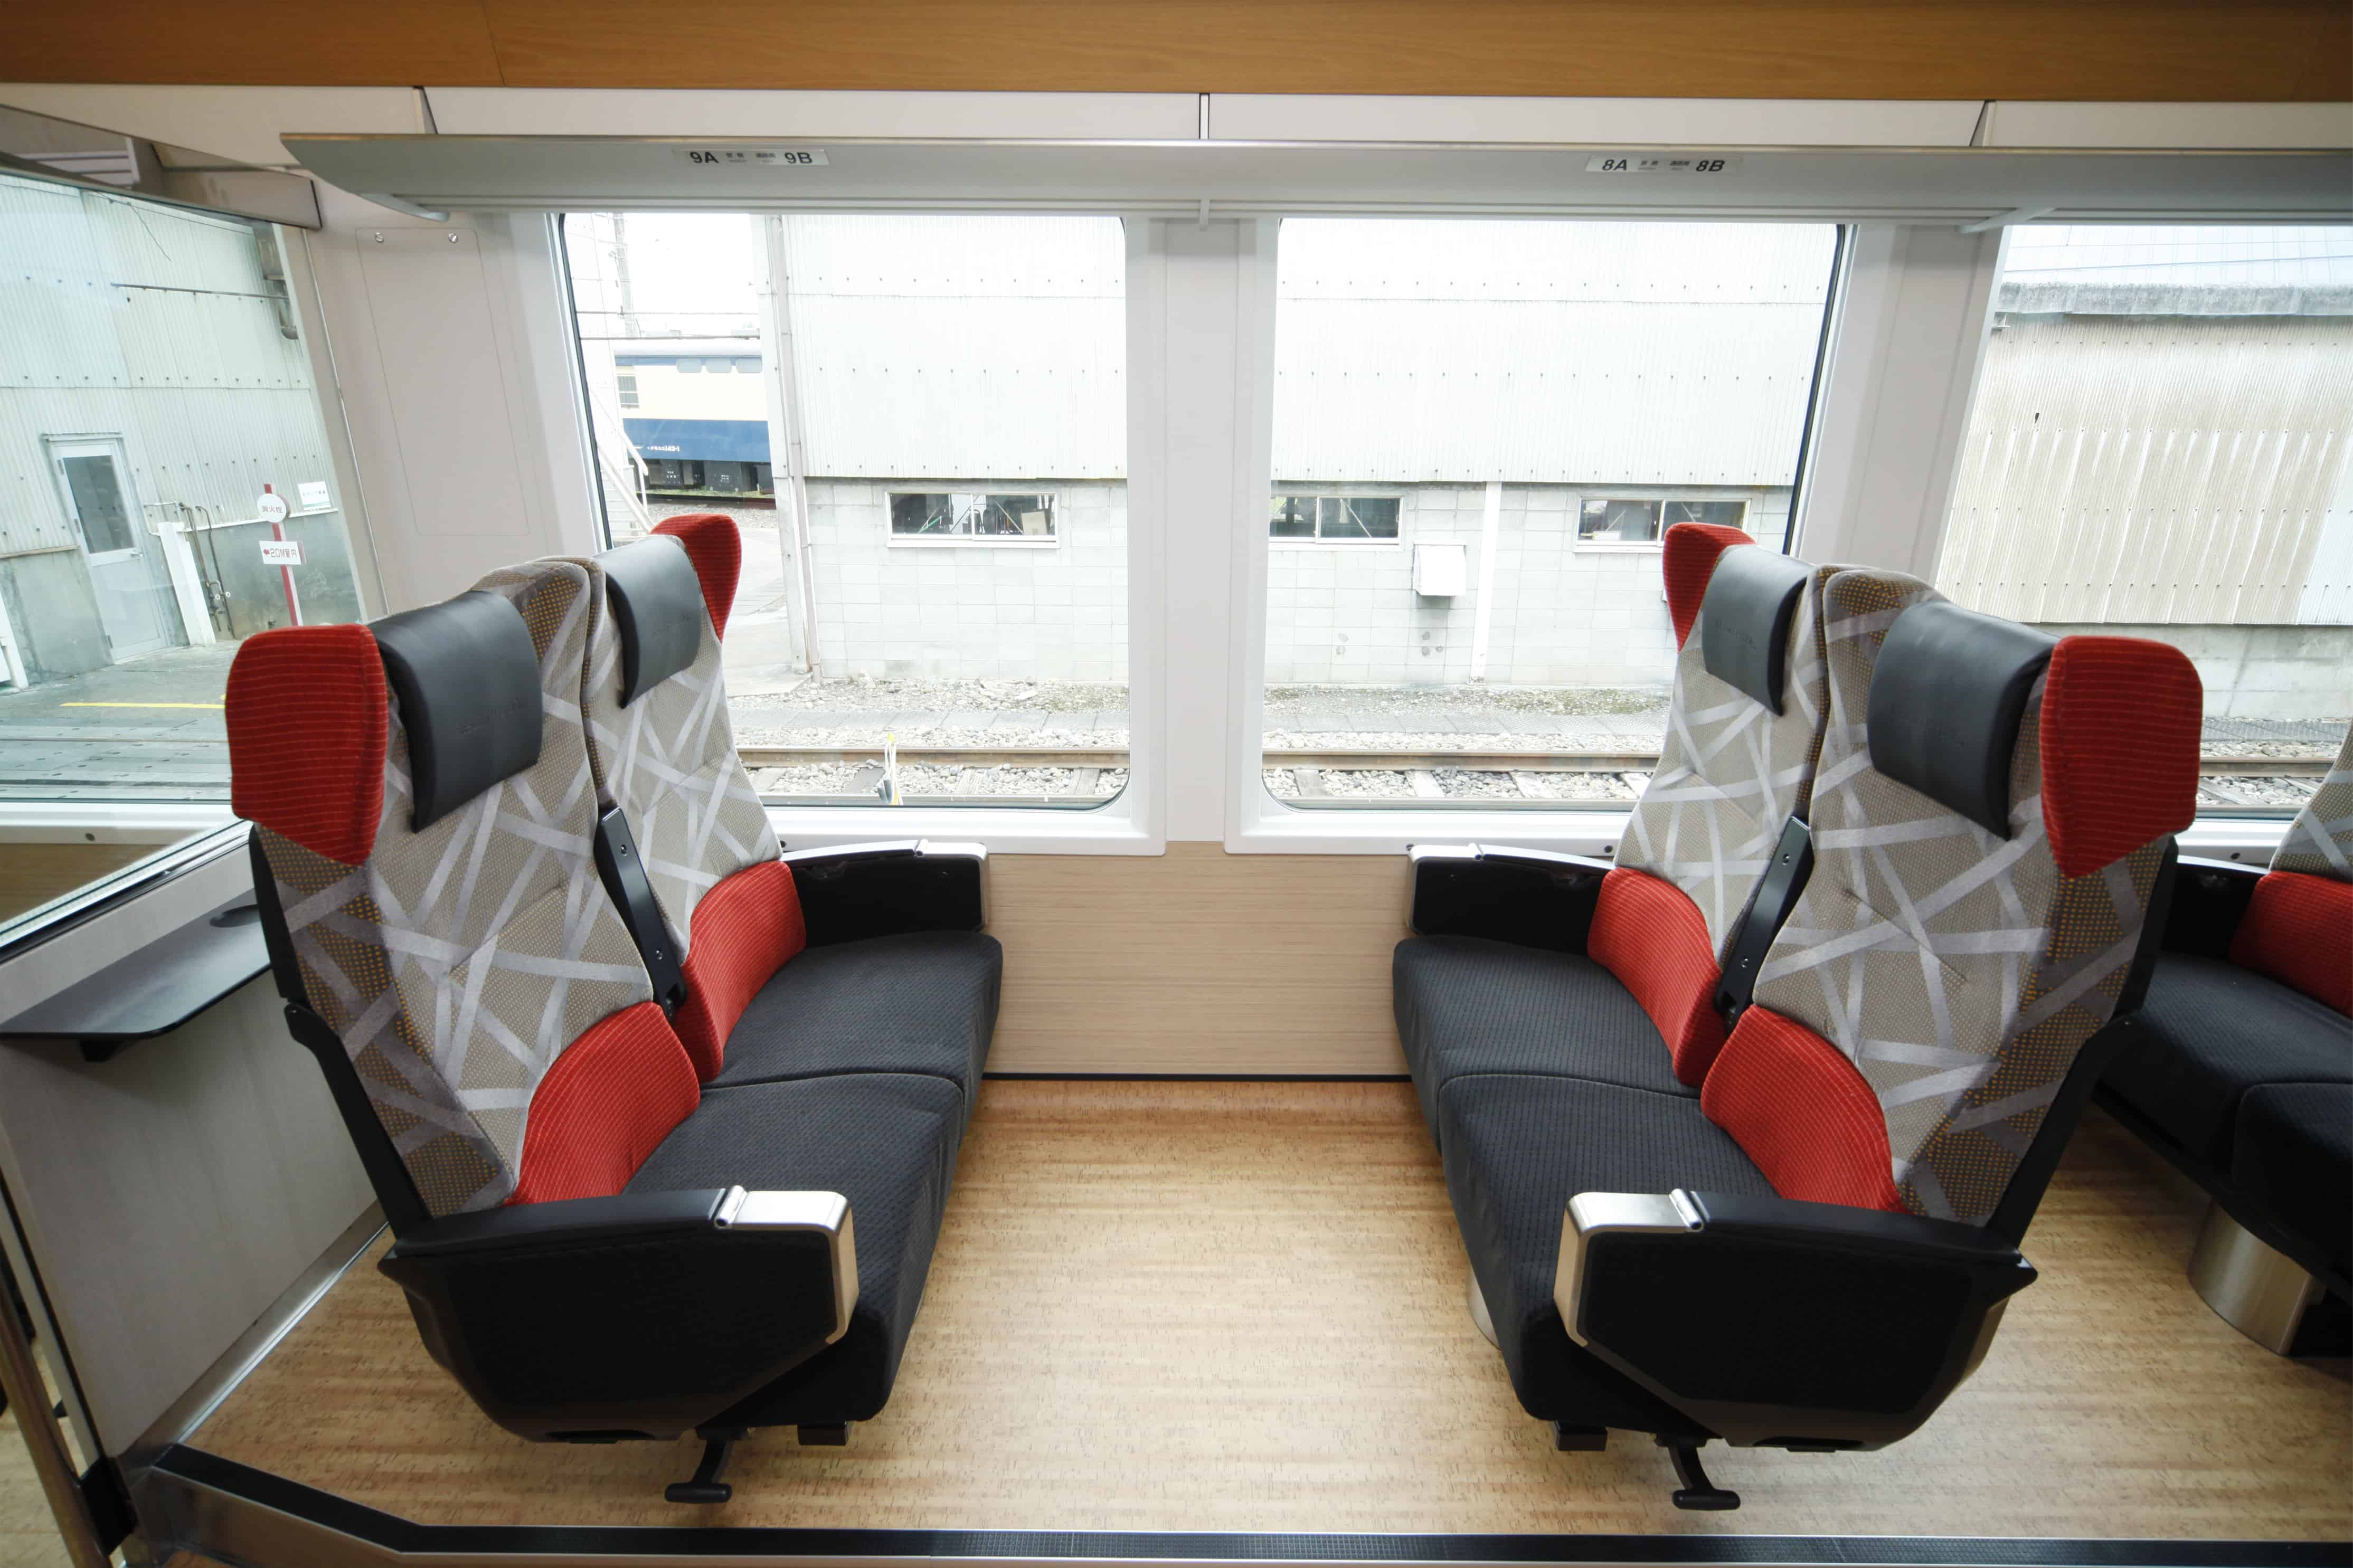 นั่งรถไฟ JOYFUL TRAIN เที่ยวญี่ปุ่น